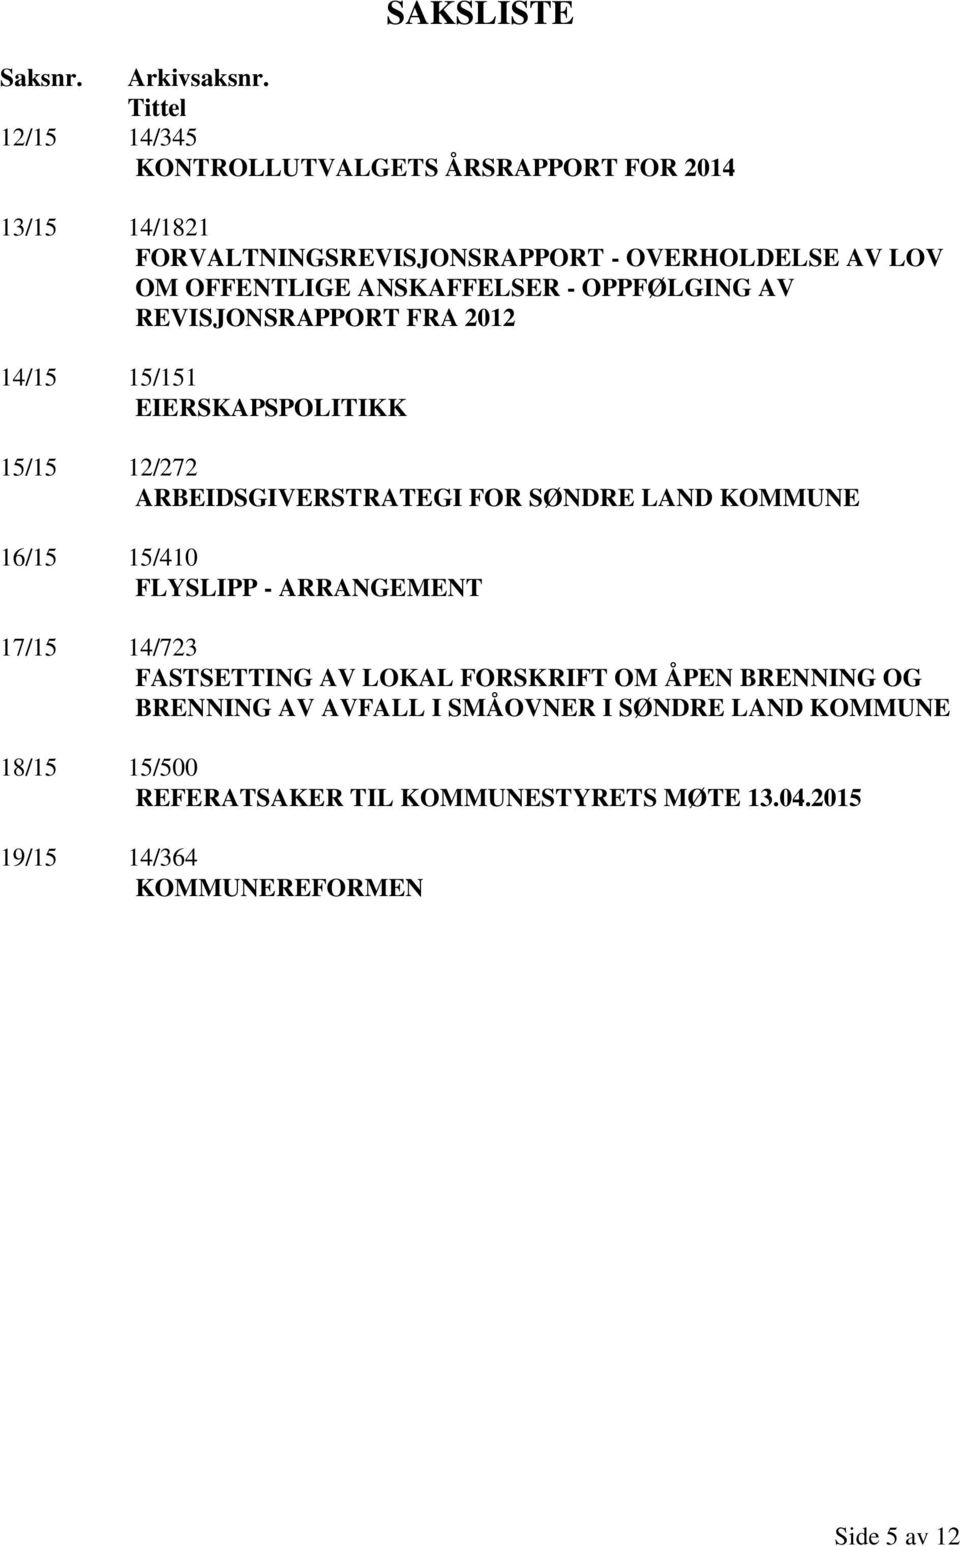 ANSKAFFELSER - OPPFØLGING AV REVISJONSRAPPORT FRA 2012 14/15 15/151 EIERSKAPSPOLITIKK 15/15 12/272 ARBEIDSGIVERSTRATEGI FOR SØNDRE LAND